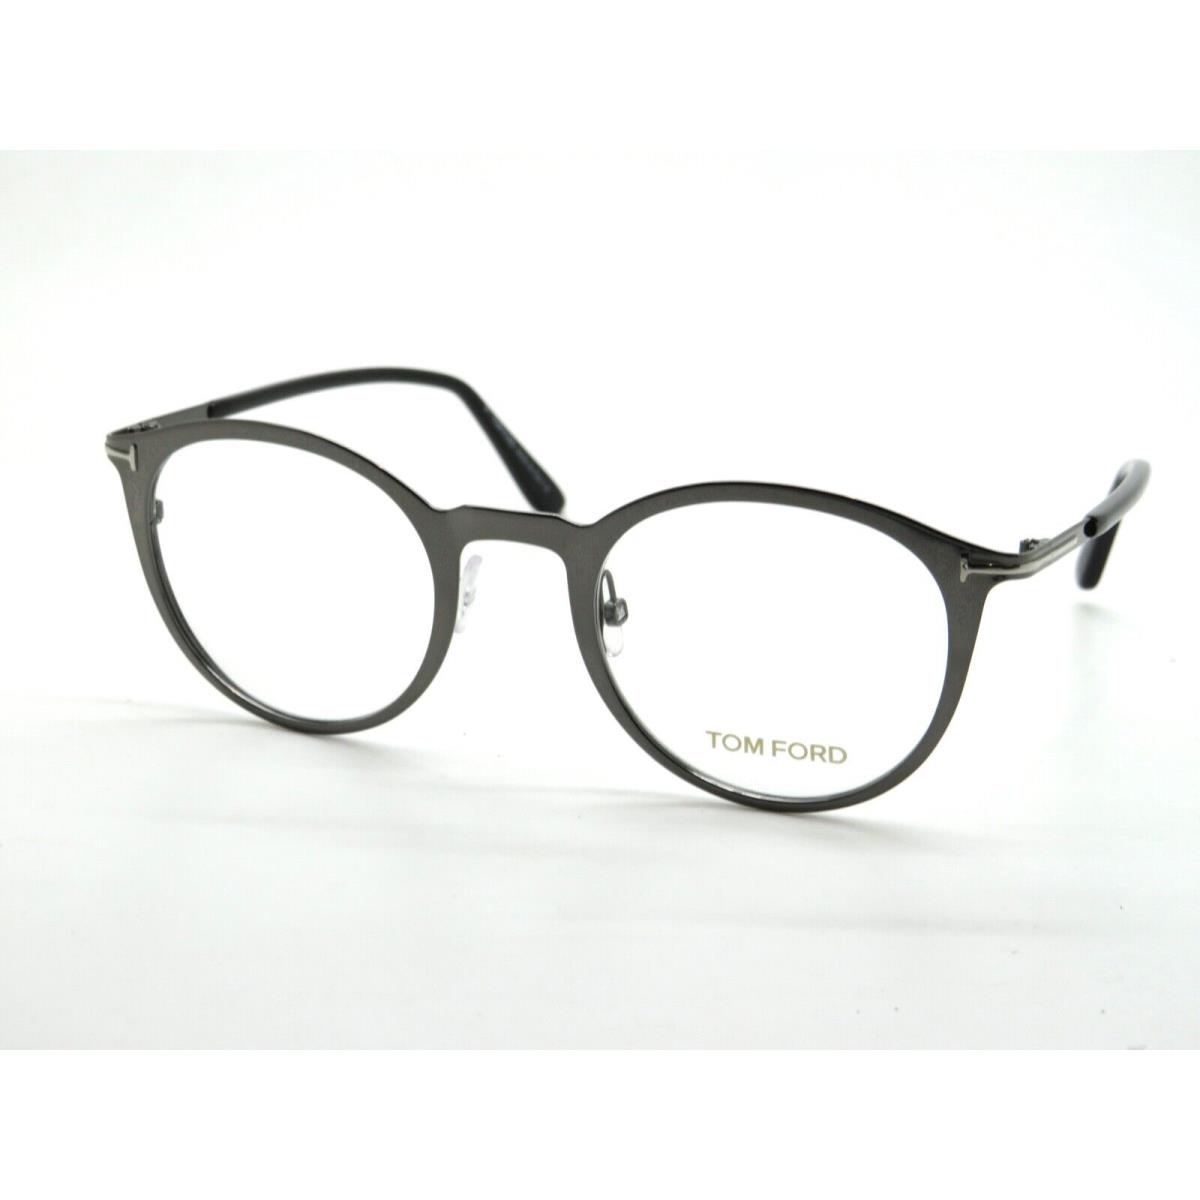 Tom Ford eyeglasses  - Gunmetal Frame 1